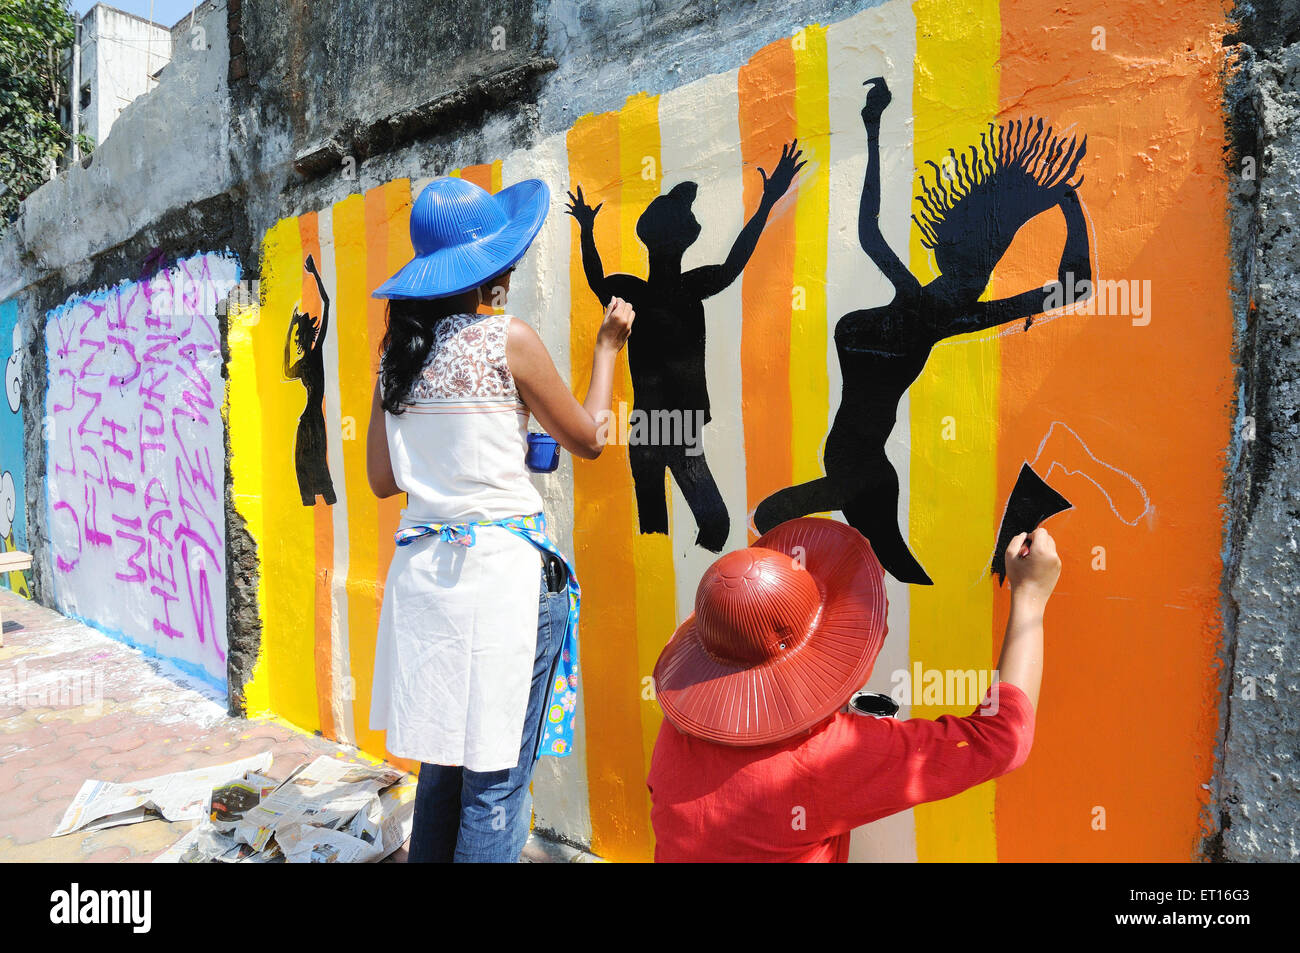 Les murs de graffiti à Lower Parel Bombay Mumbai ; ; ; Québec : Inde Banque D'Images